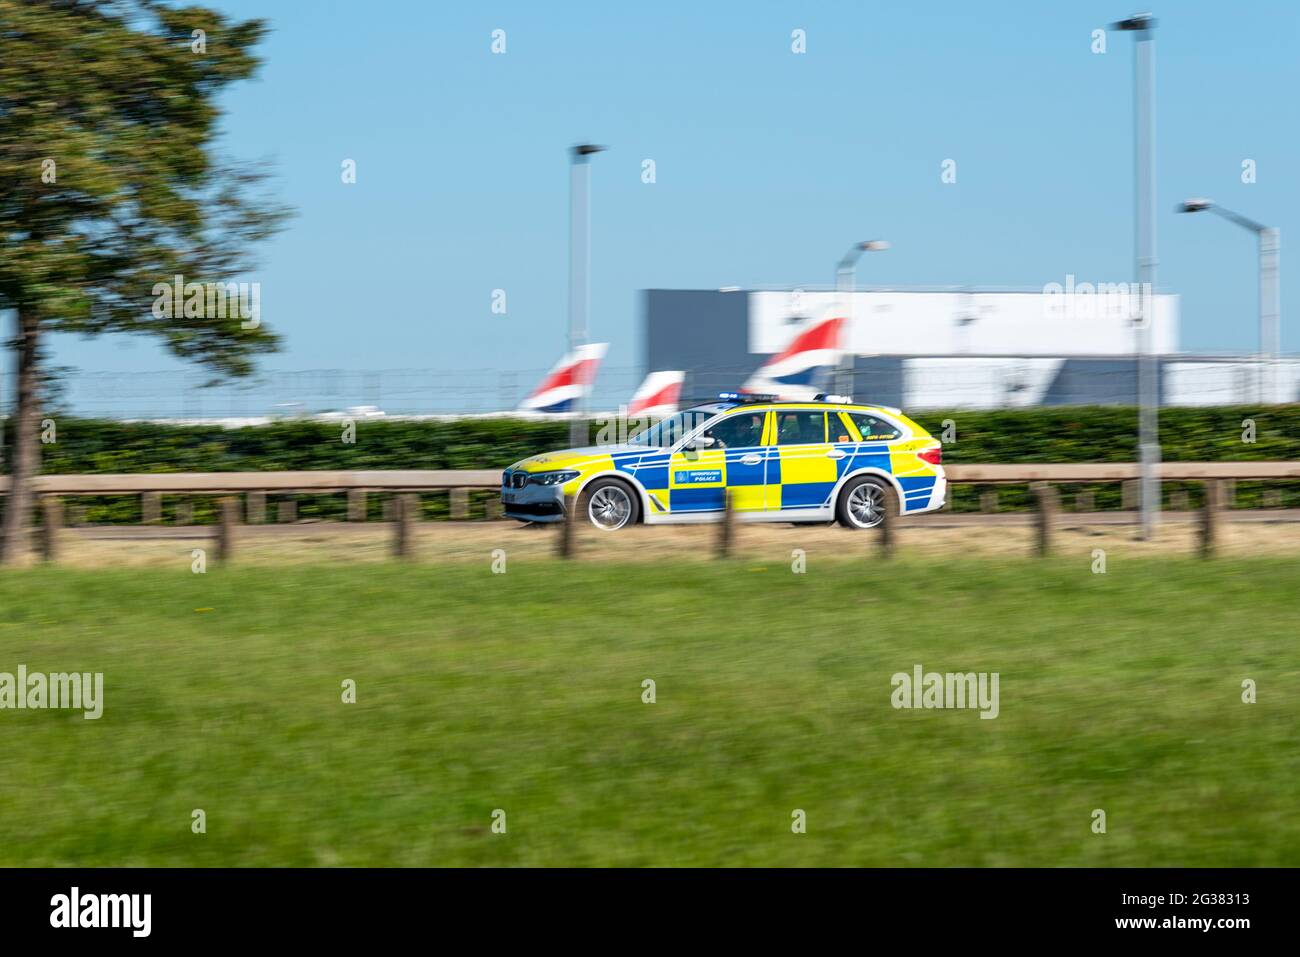 El día de la visita del presidente estadounidense Joe Biden, la policía metropolitana compite con coches a velocidad con luces azules en A30 pasando por el aeropuerto de Heathrow en Londres, Reino Unido Foto de stock